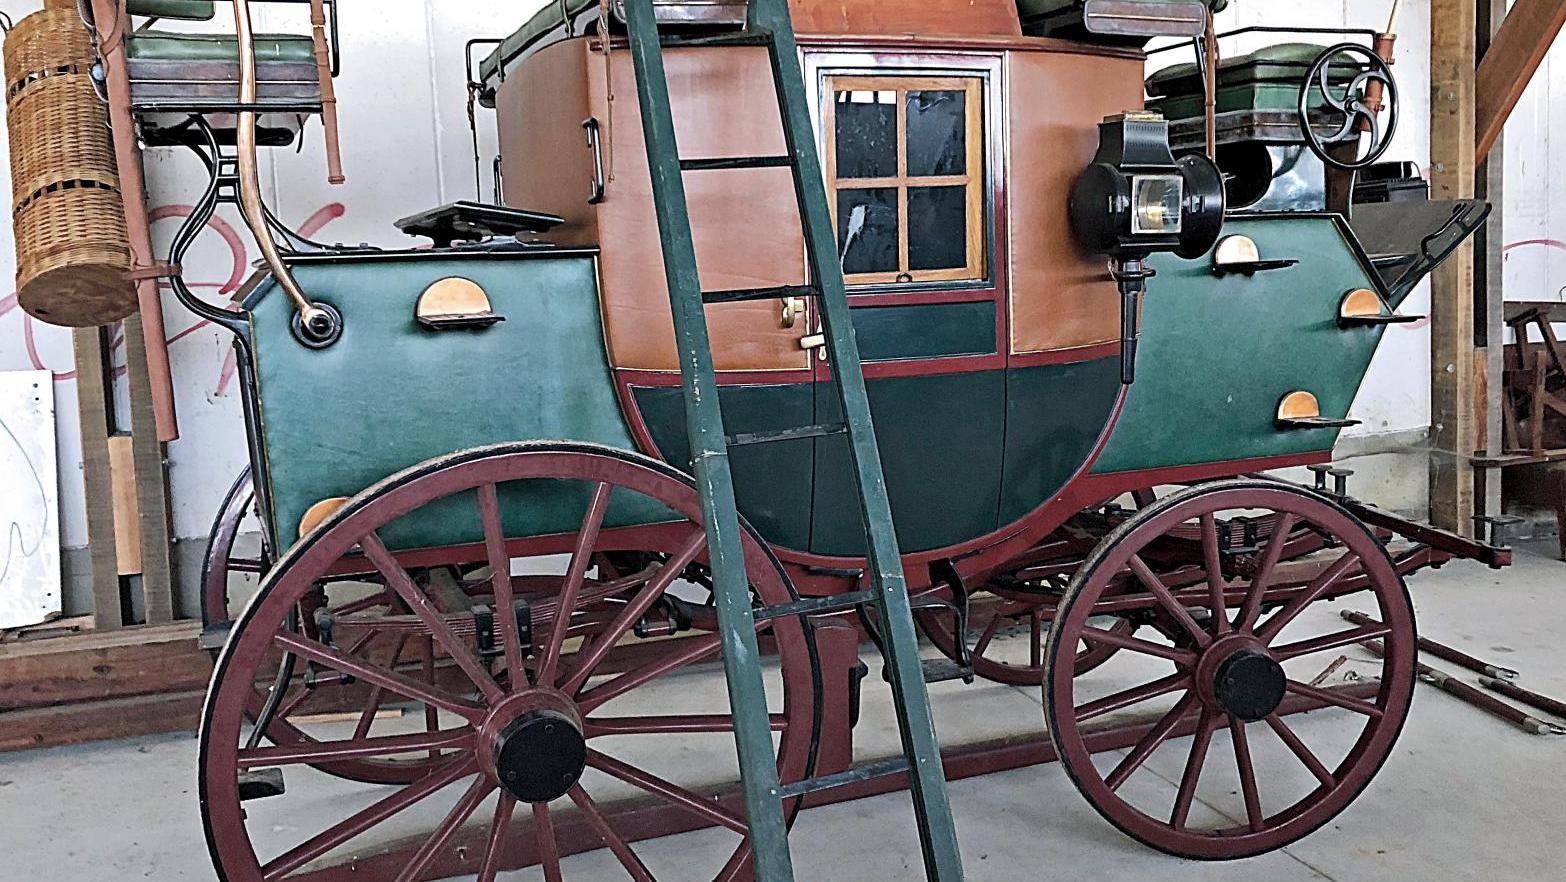 Mail-coach drag à train relié, vers 1870, par le carrossier J. Plante à Pau, restauré... Se déplacer avec panache au XIXe siècle